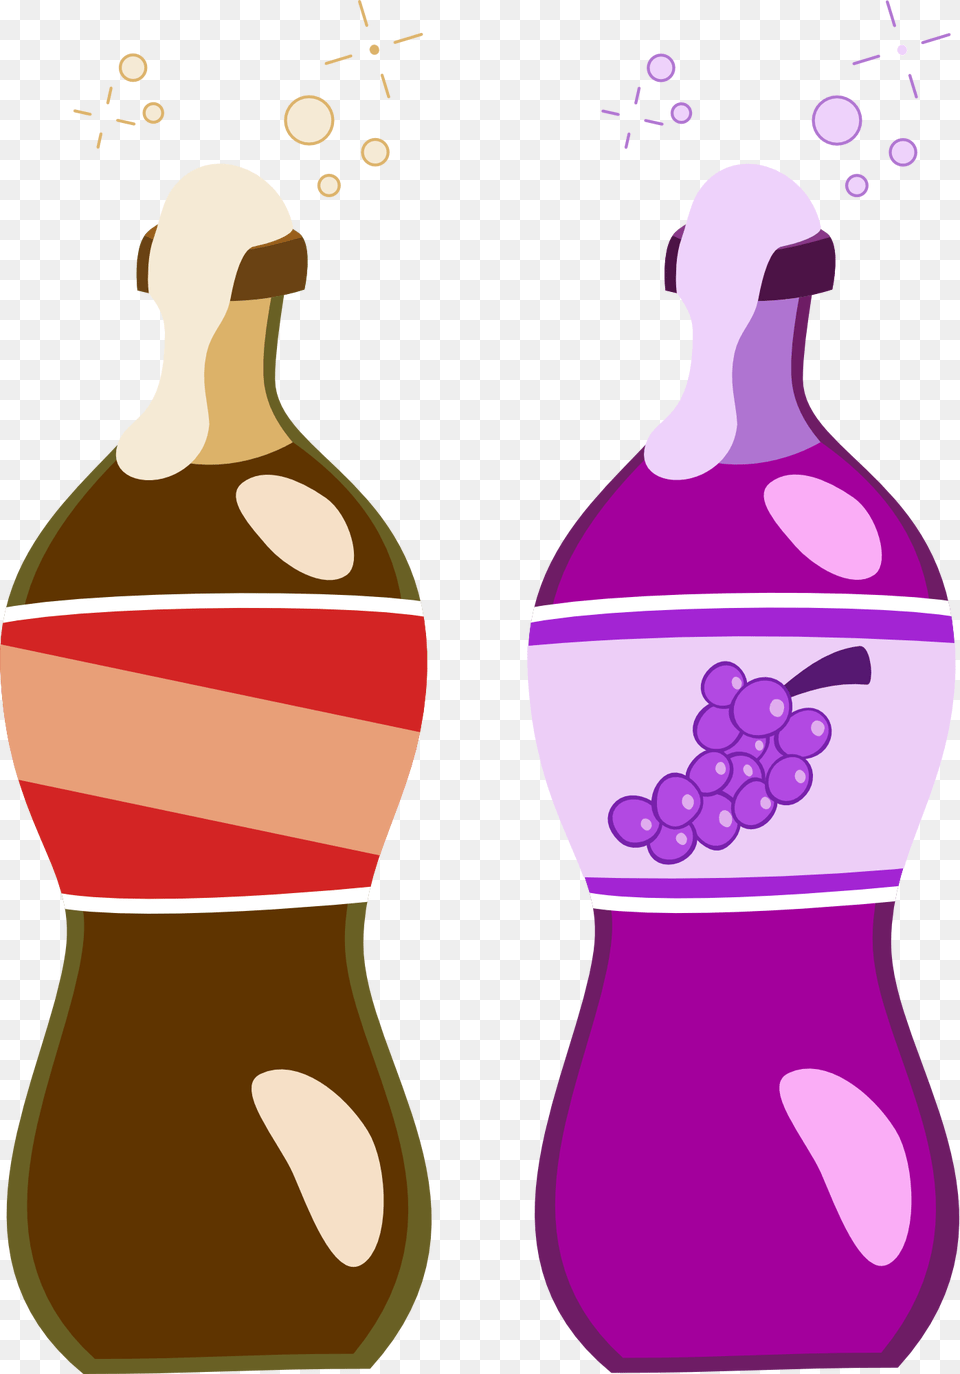 Food Clipart Coke, Bottle, Beverage, Pop Bottle, Soda Free Png